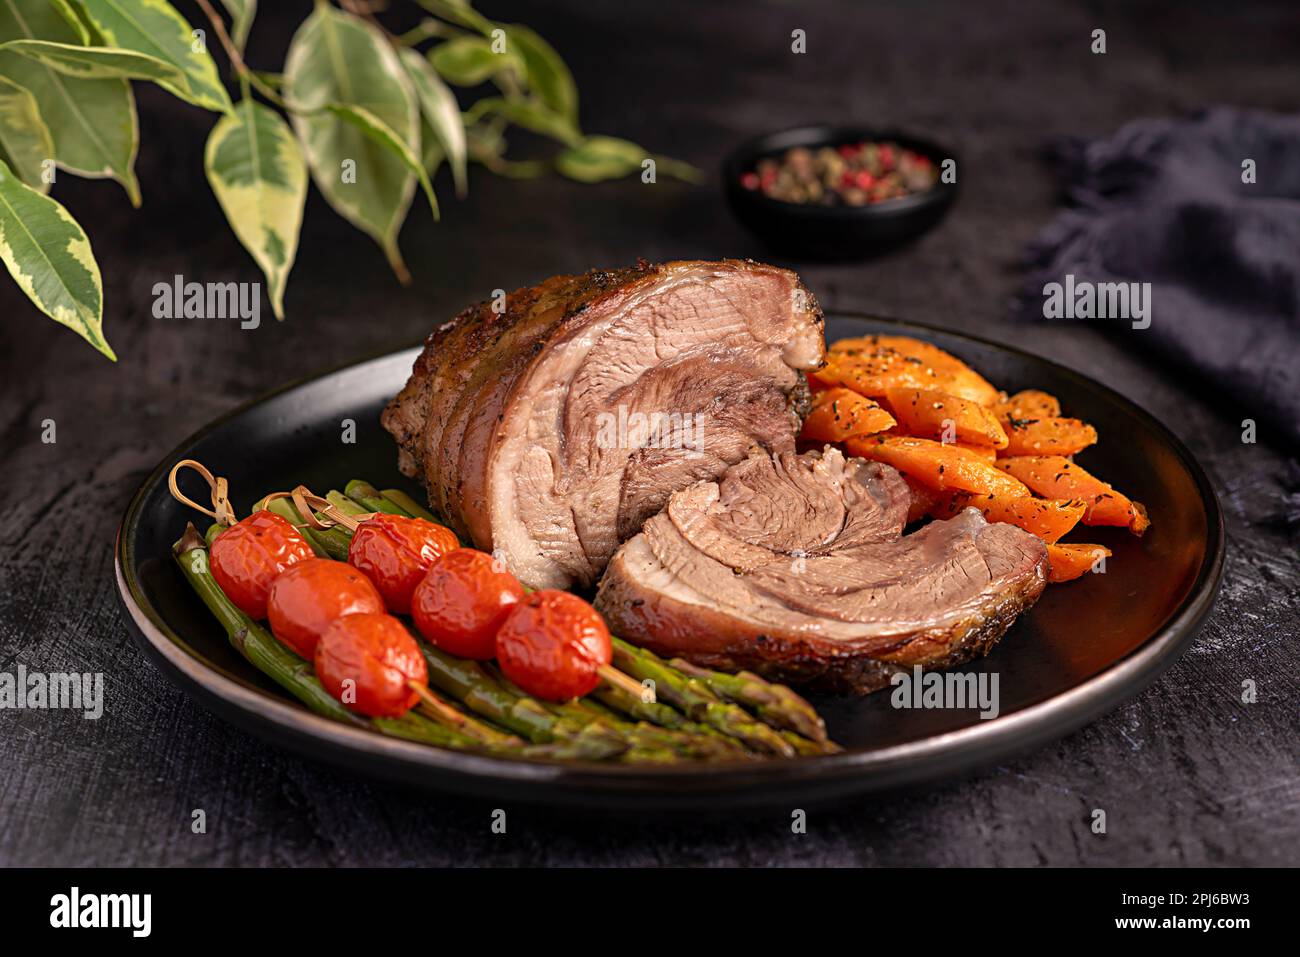 Fotografia alimentare di agnello arrosto, carota, asparagi, pomodoro, condimento, pepe, pranzo, cena Foto Stock